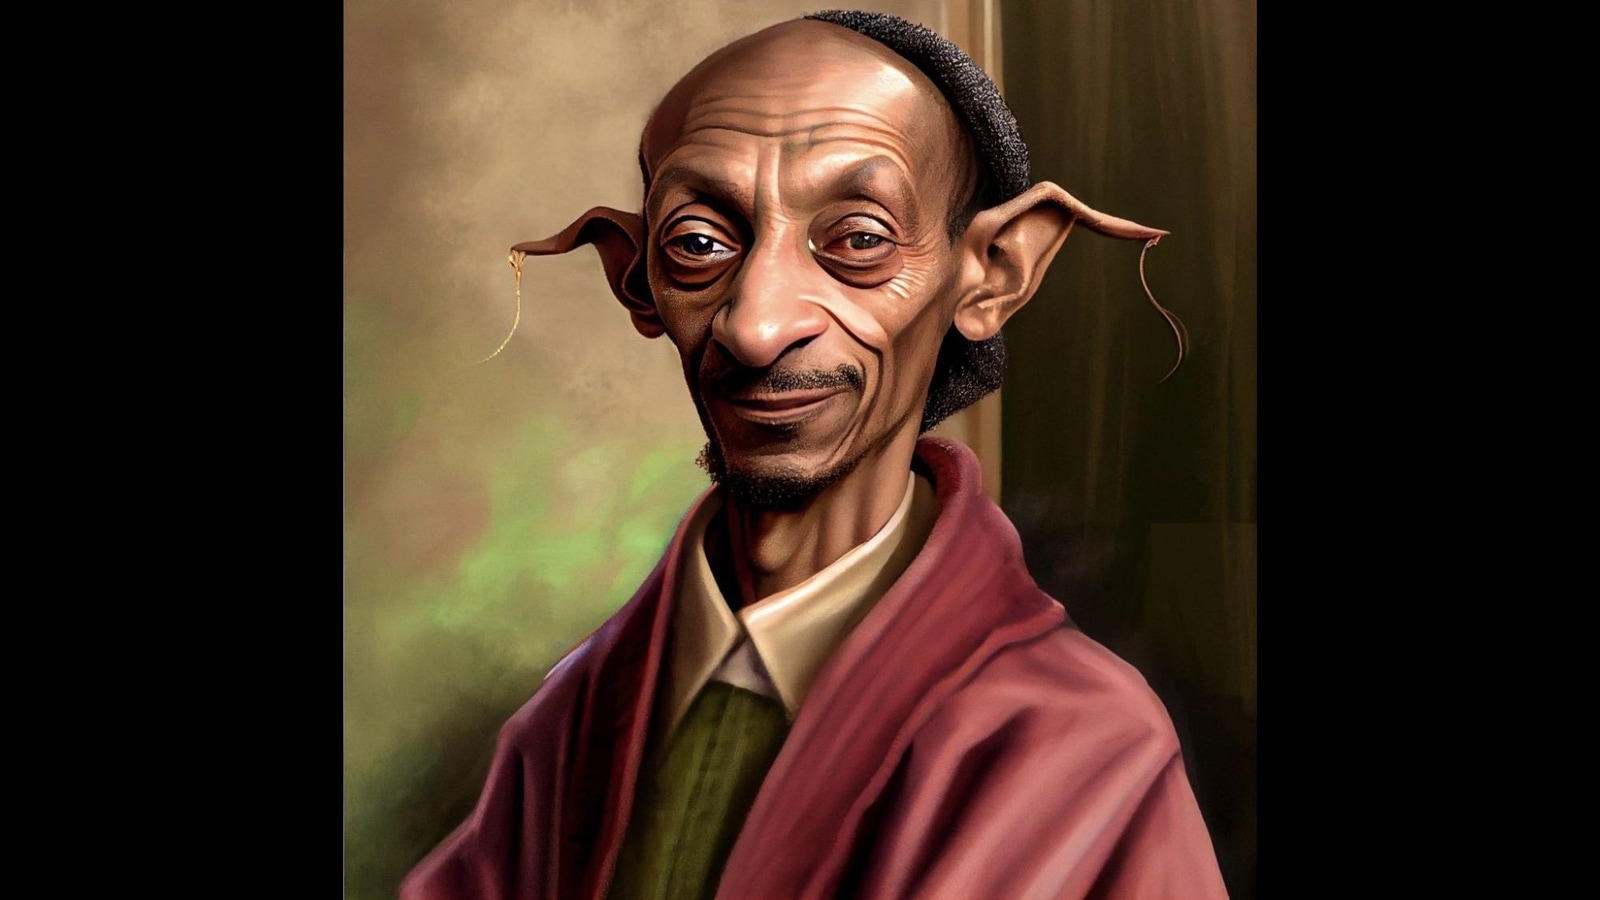 Snoop Dogg tweets Harry Potter fan art of himself as Dobby, JK